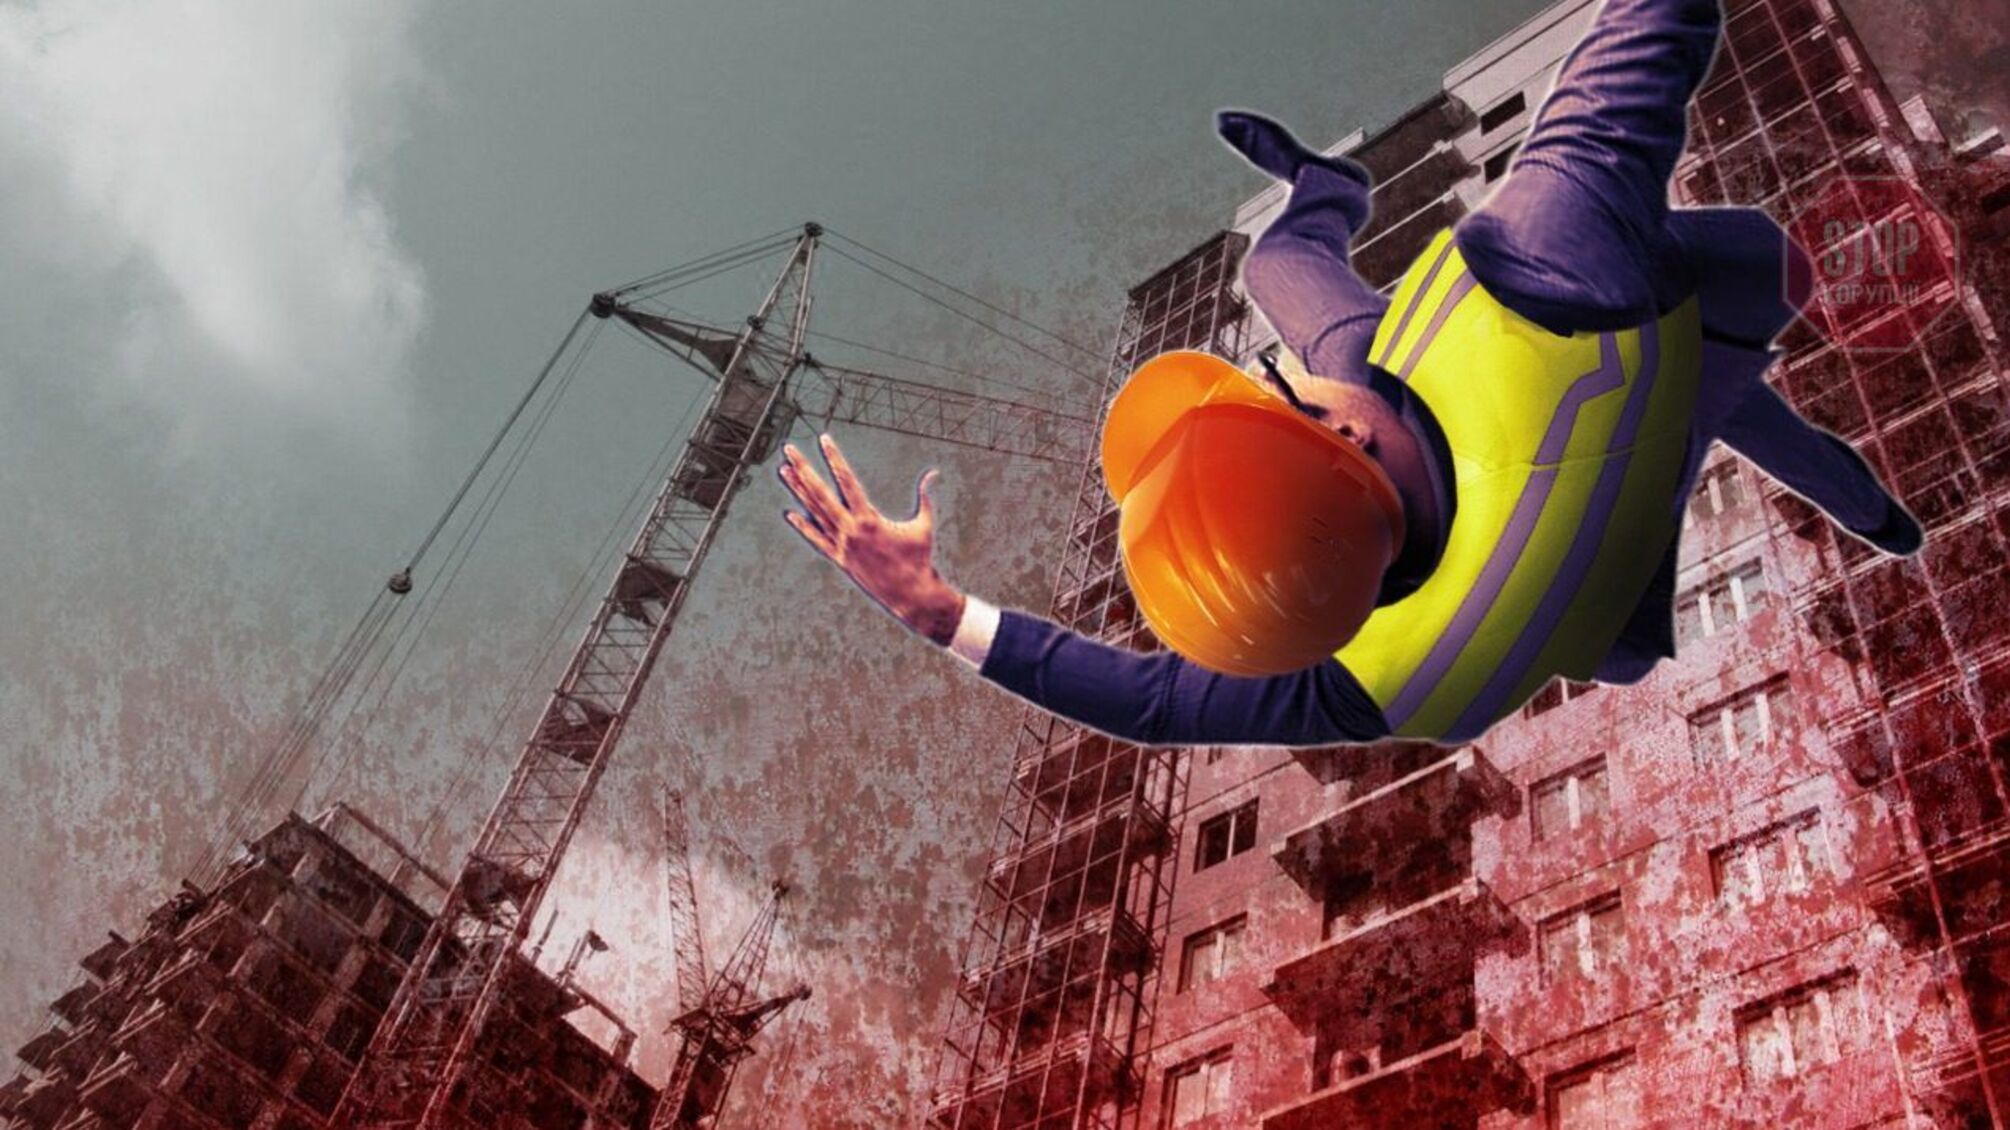 Небезпечне будівництво: у Херсоні з висотки випав робітник, а інвестори заявили про афери замовників